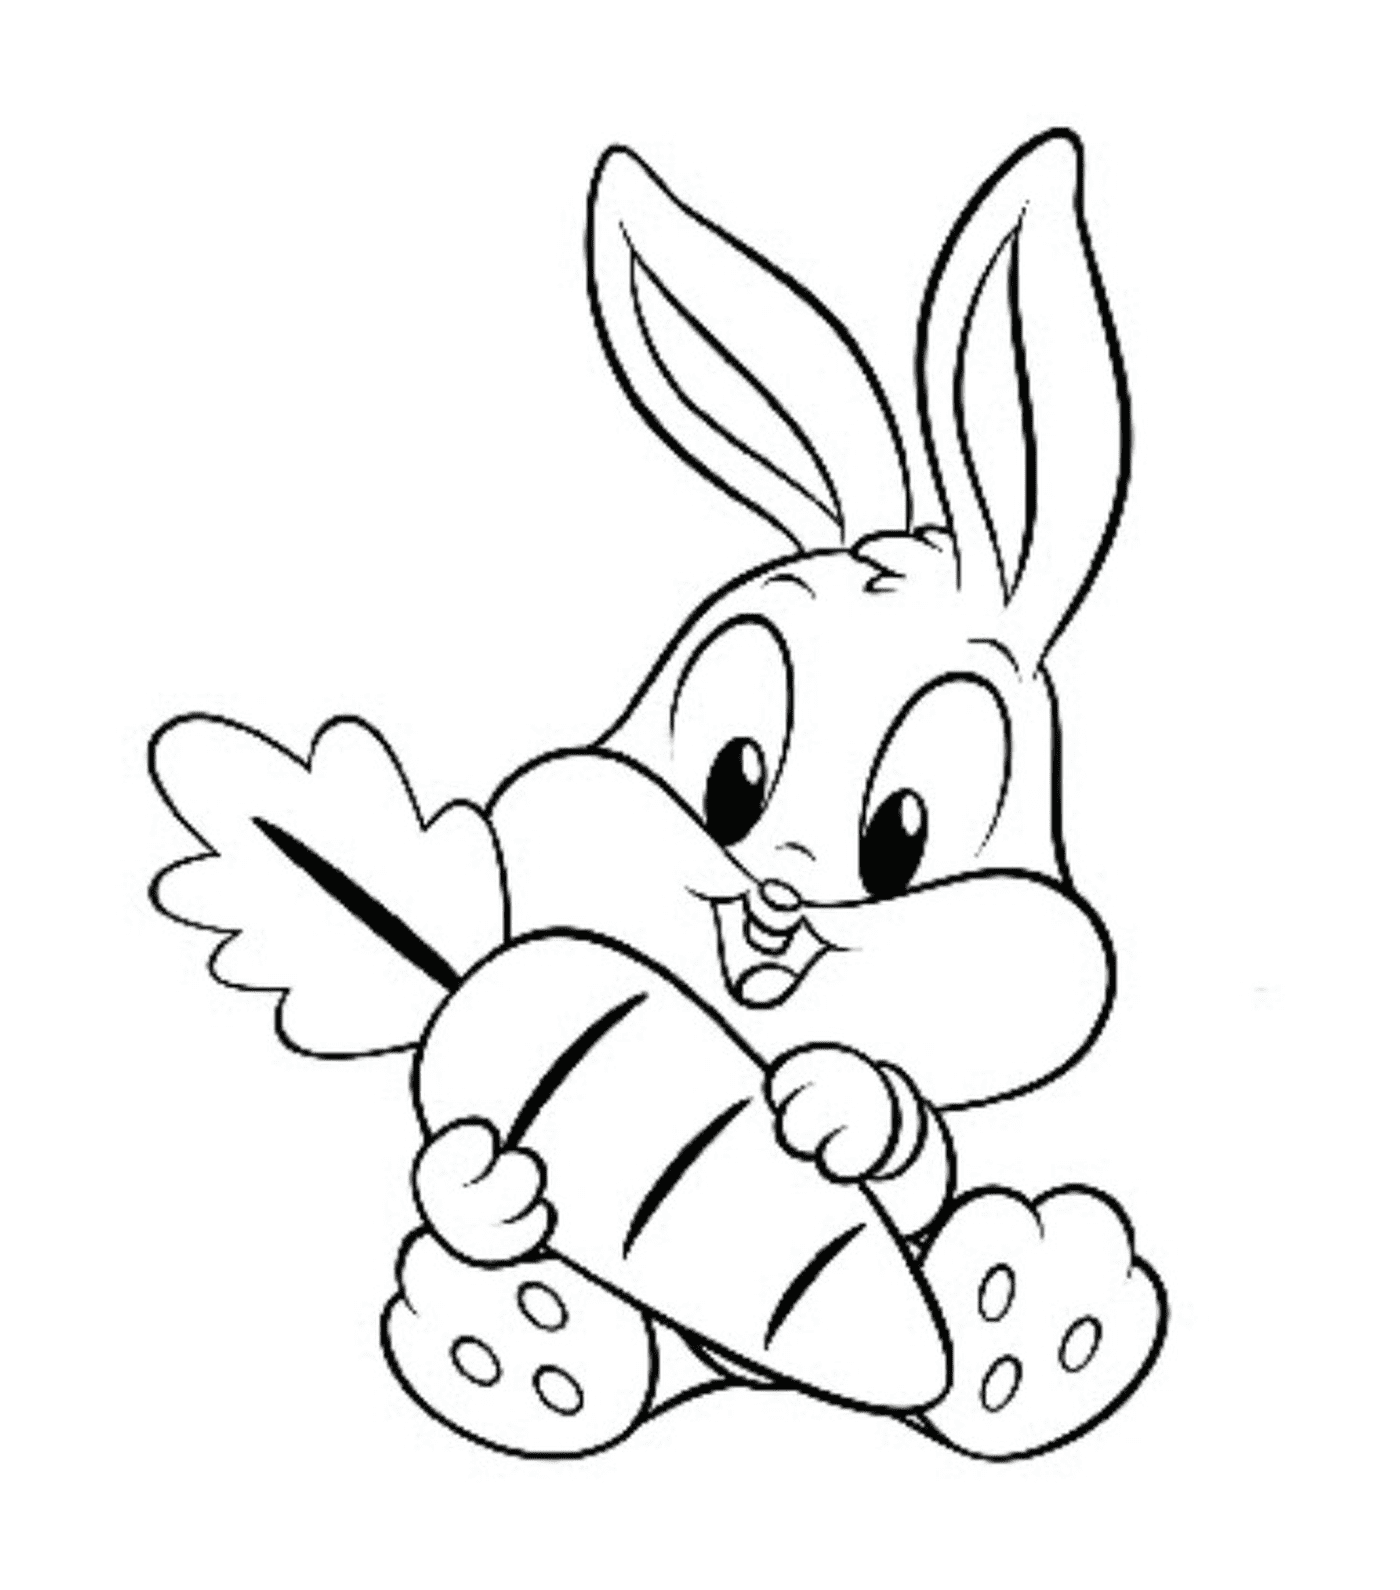  Ein Kaninchen, das eine große Karotte im Mund hält 